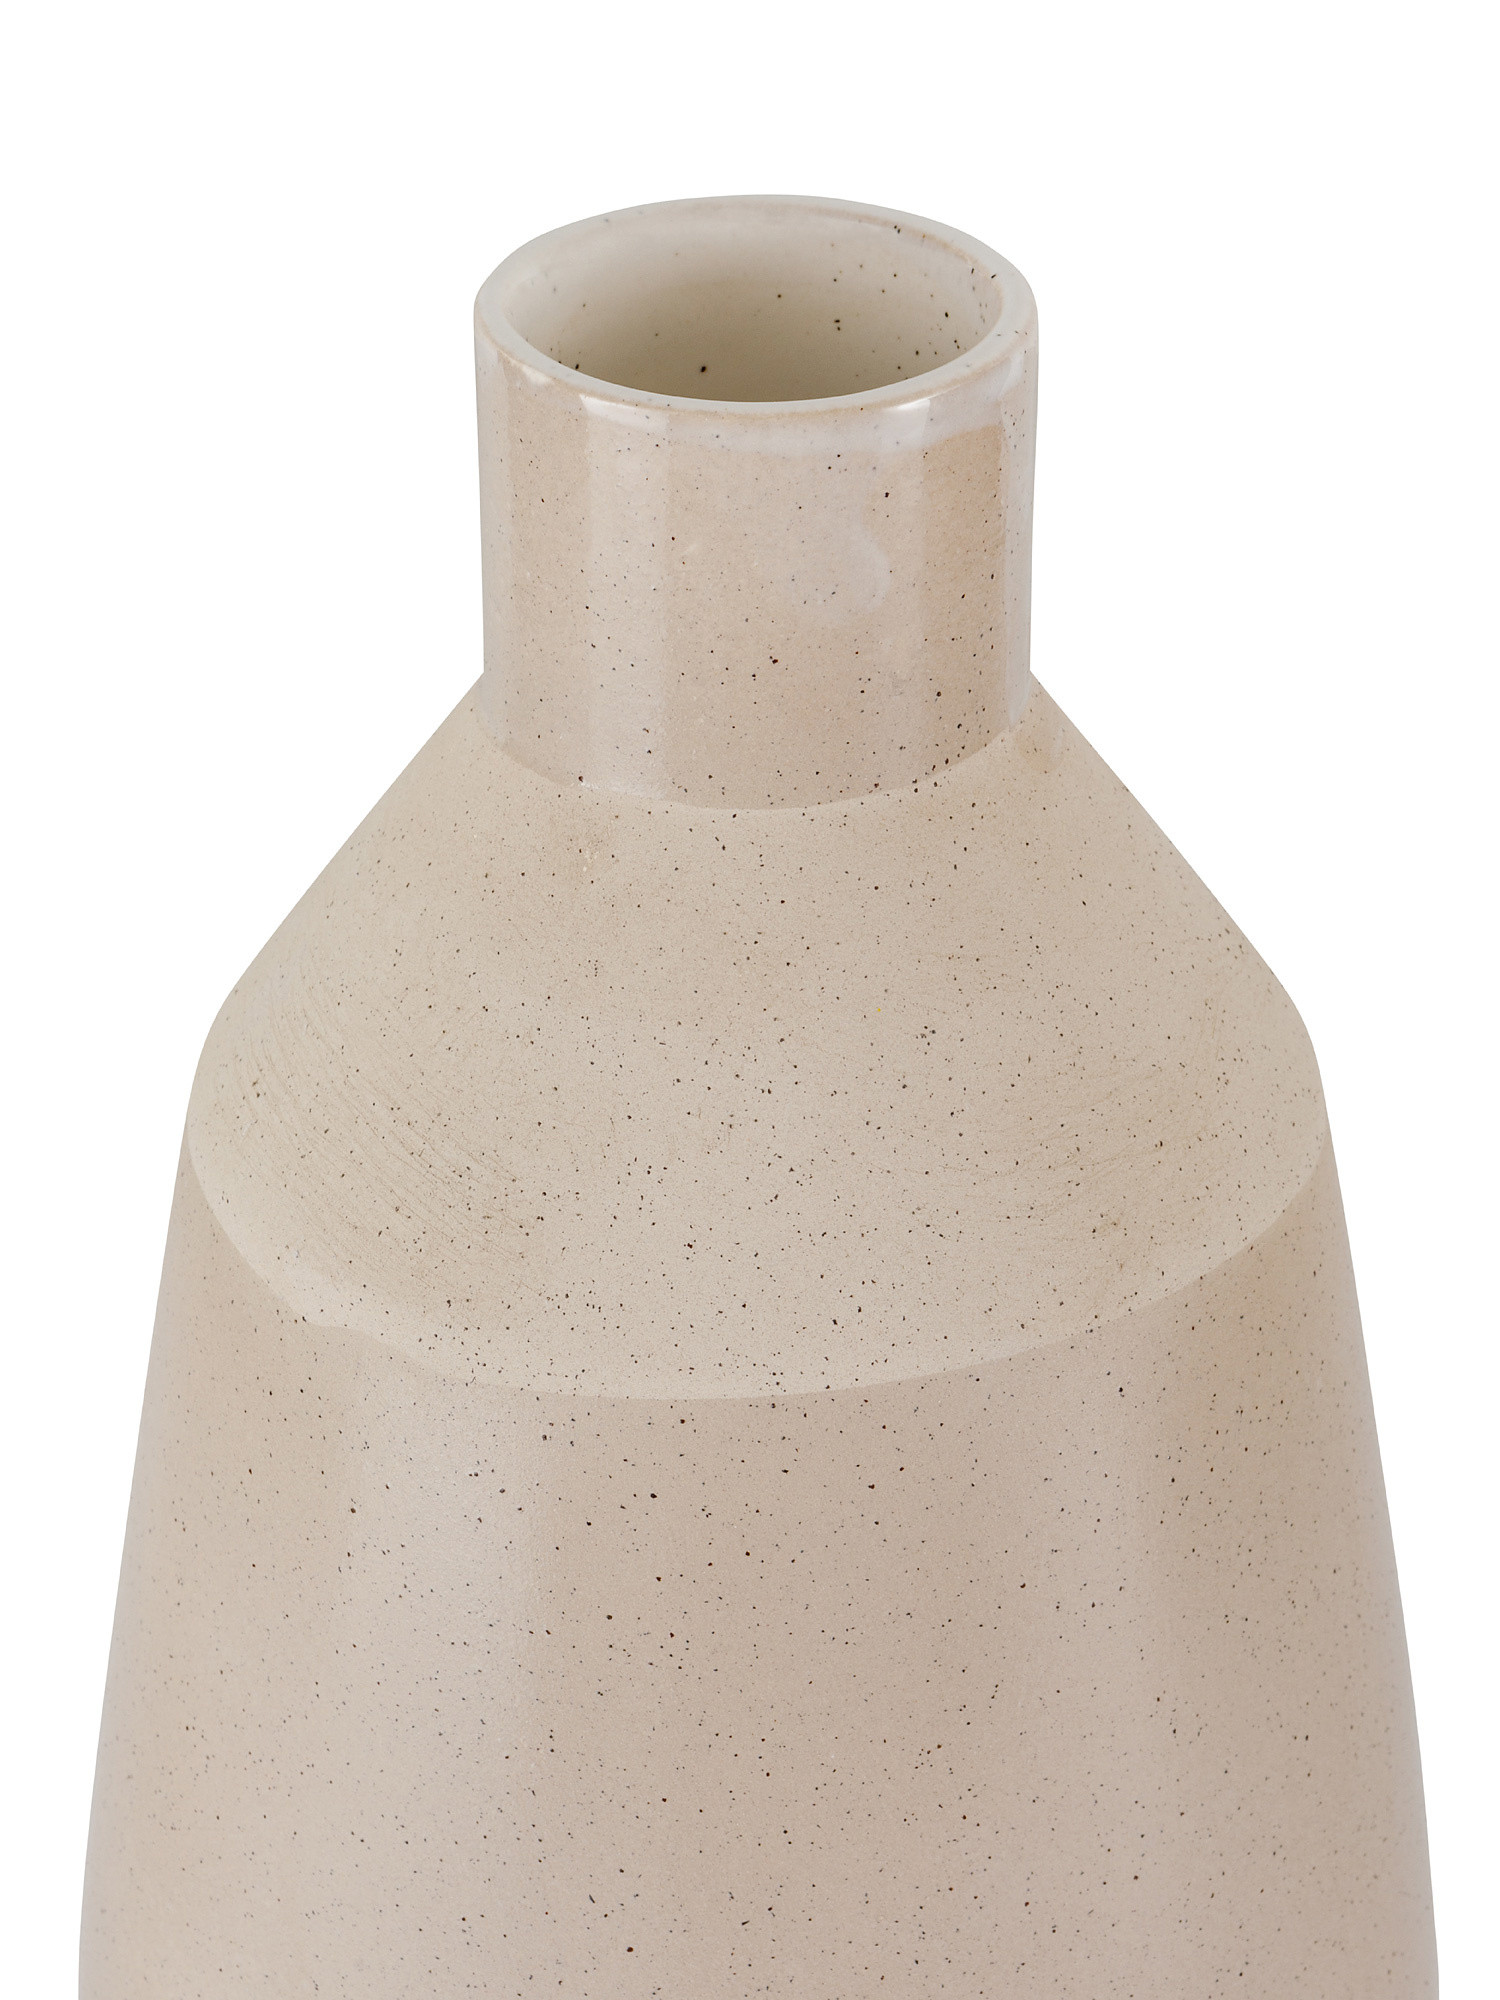 Vaso ceramica portoghese, Beige, large image number 1